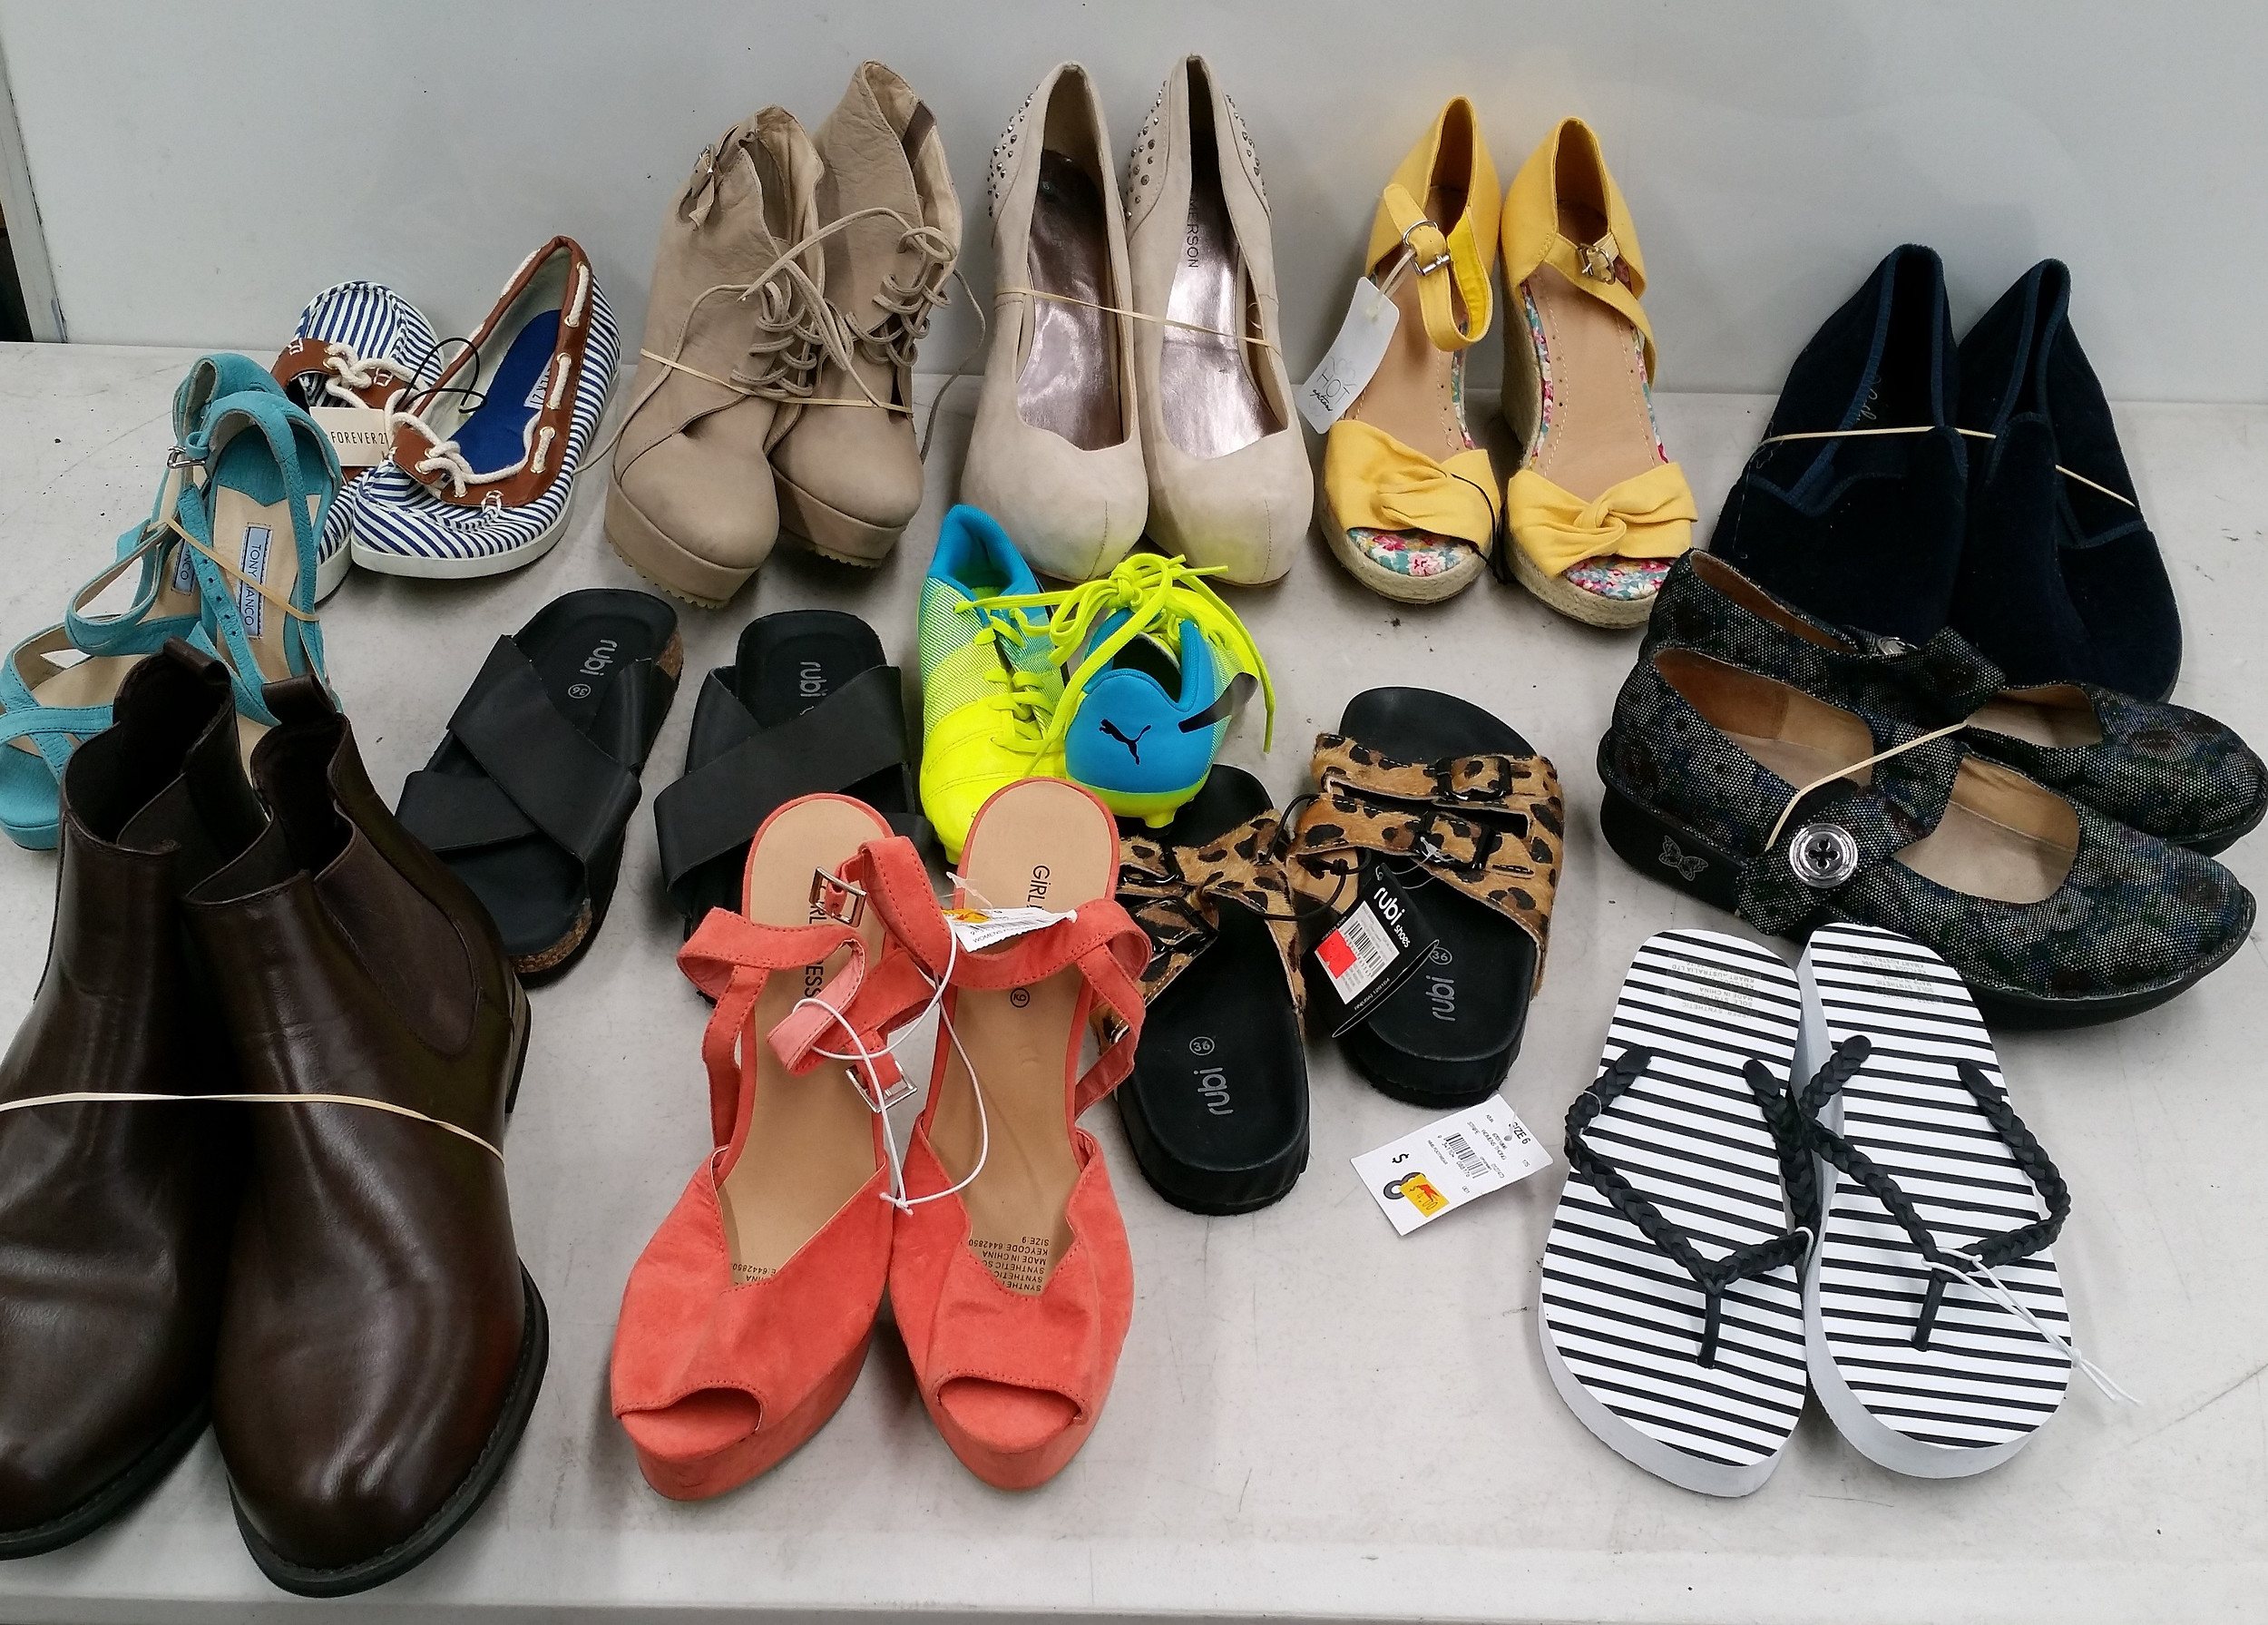 Bulk Lot of Assorted Shoes - Lot 1007613 | ALLBIDS